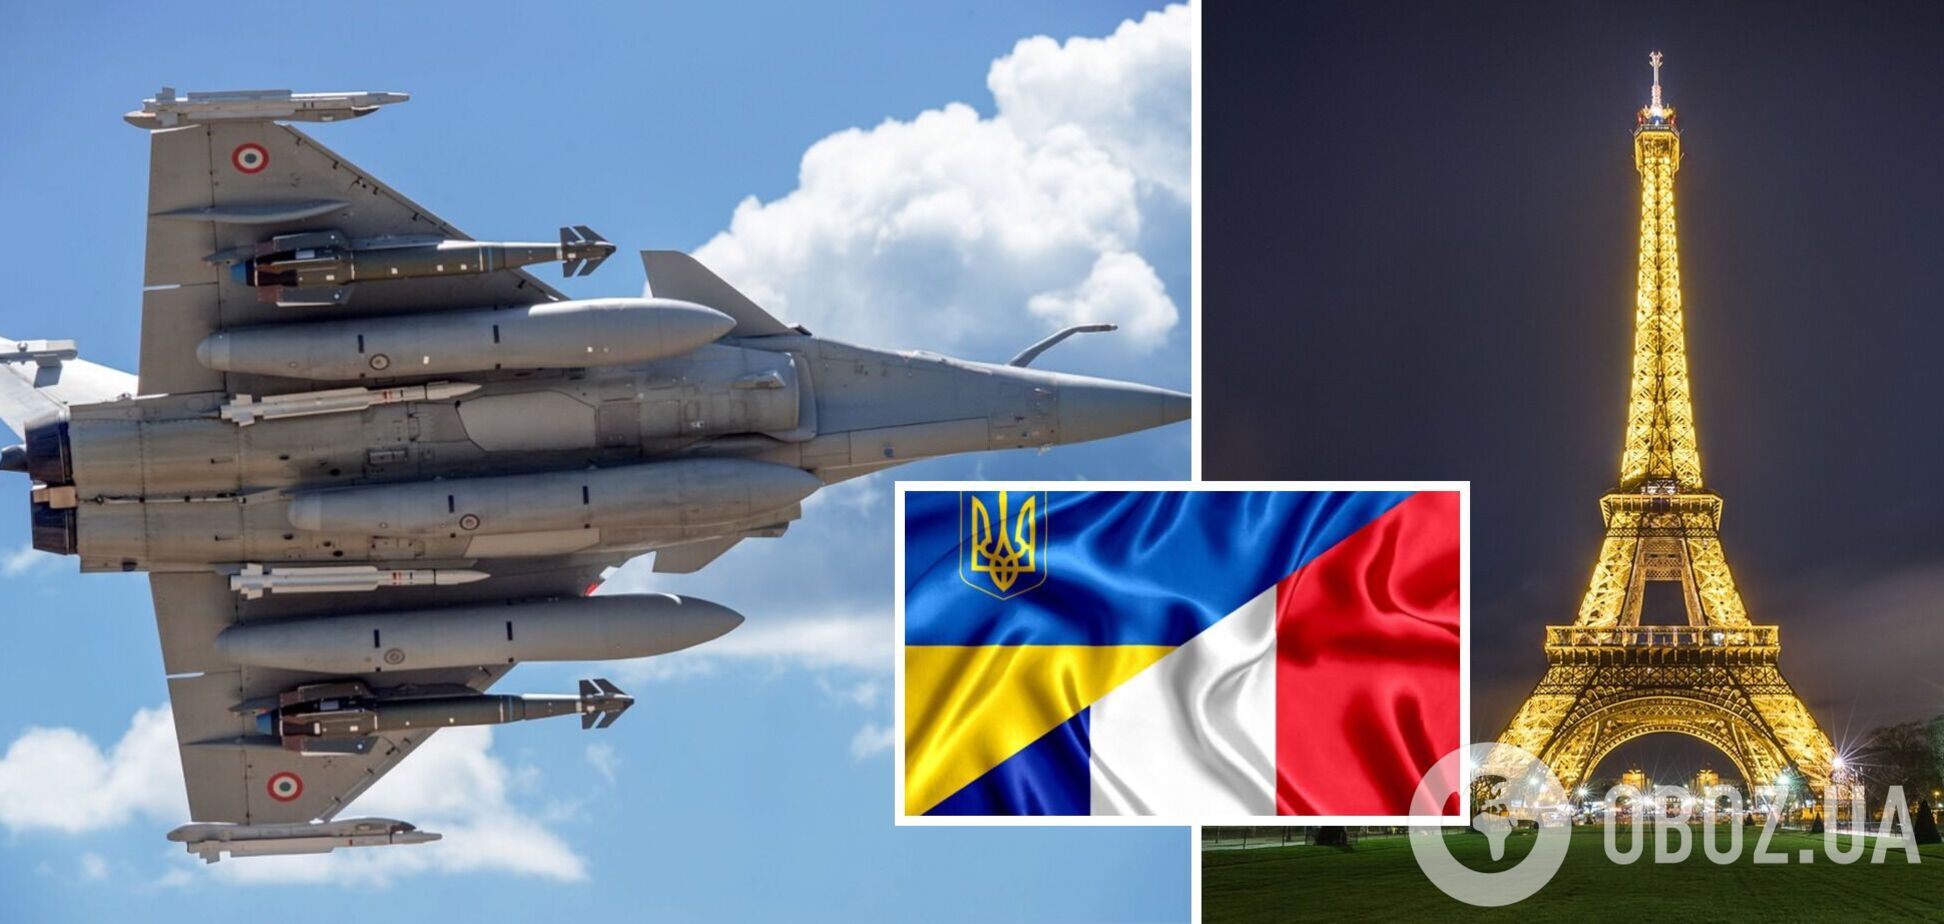 Франция рассматривает возможность передачи Украине истребителей, но есть условия — The Guardian